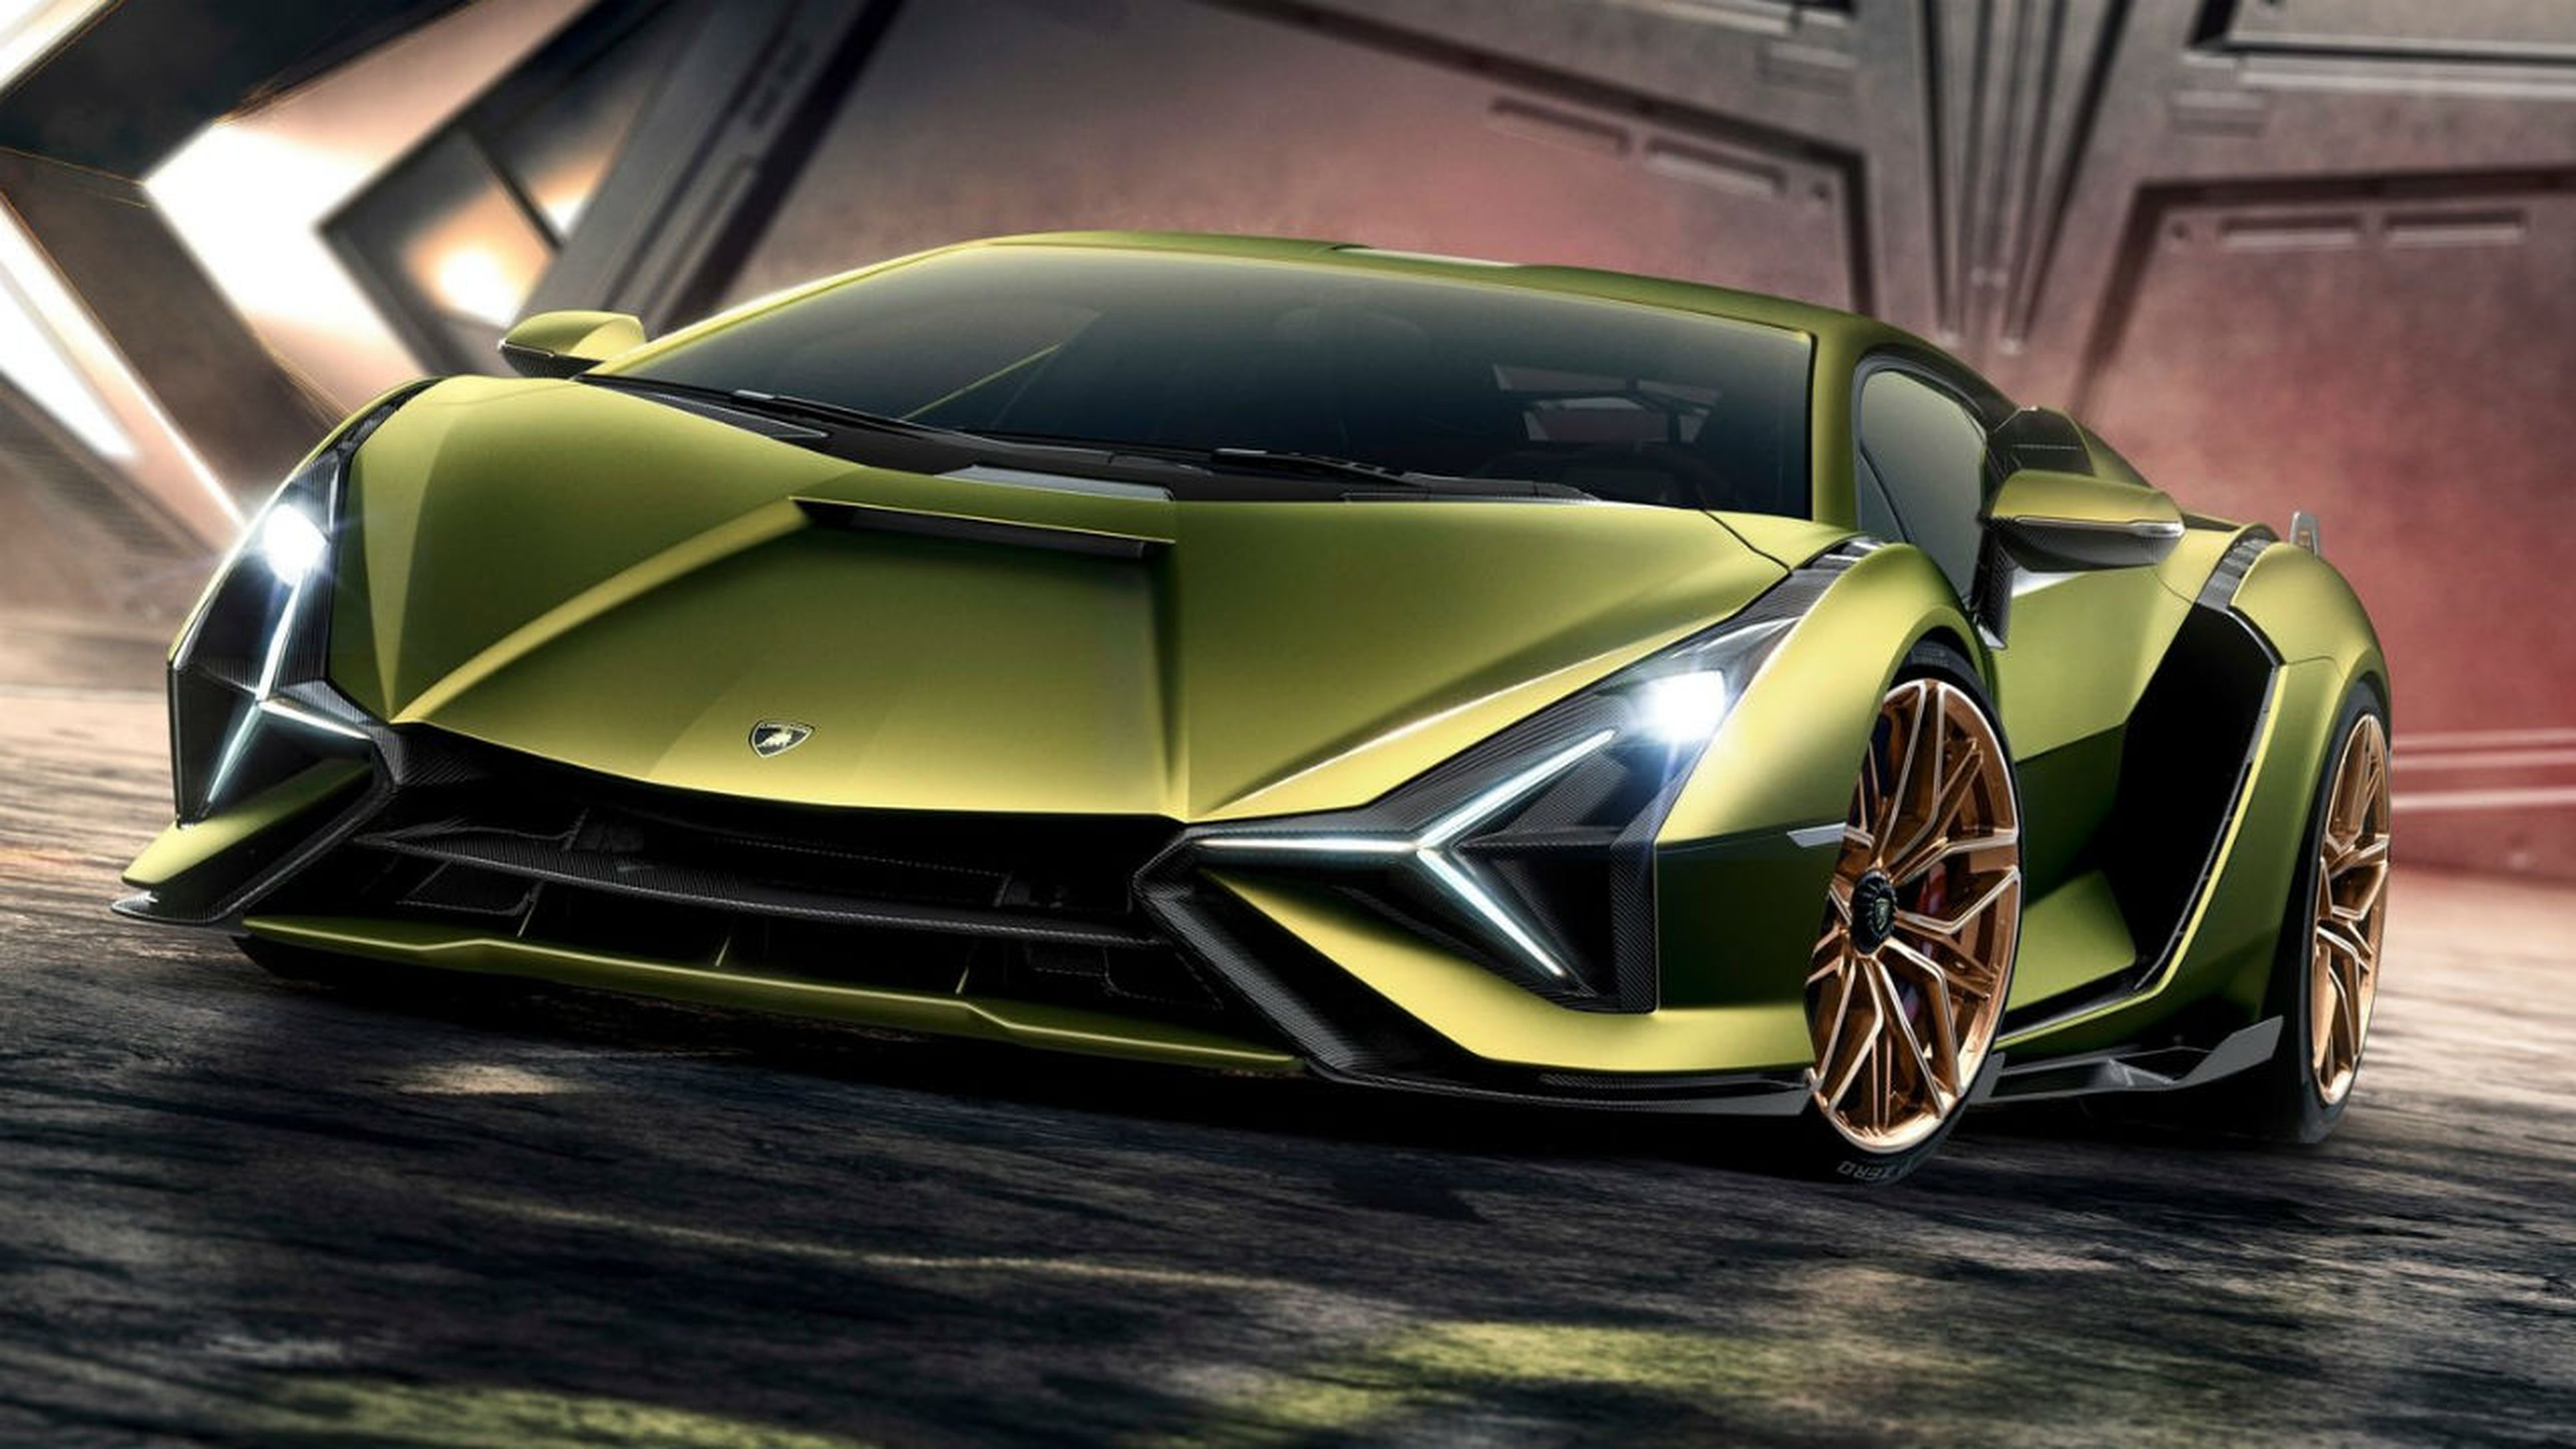 El Lamborghini Sian es uno de los modelos más radicales que veremos en Frankfurt.